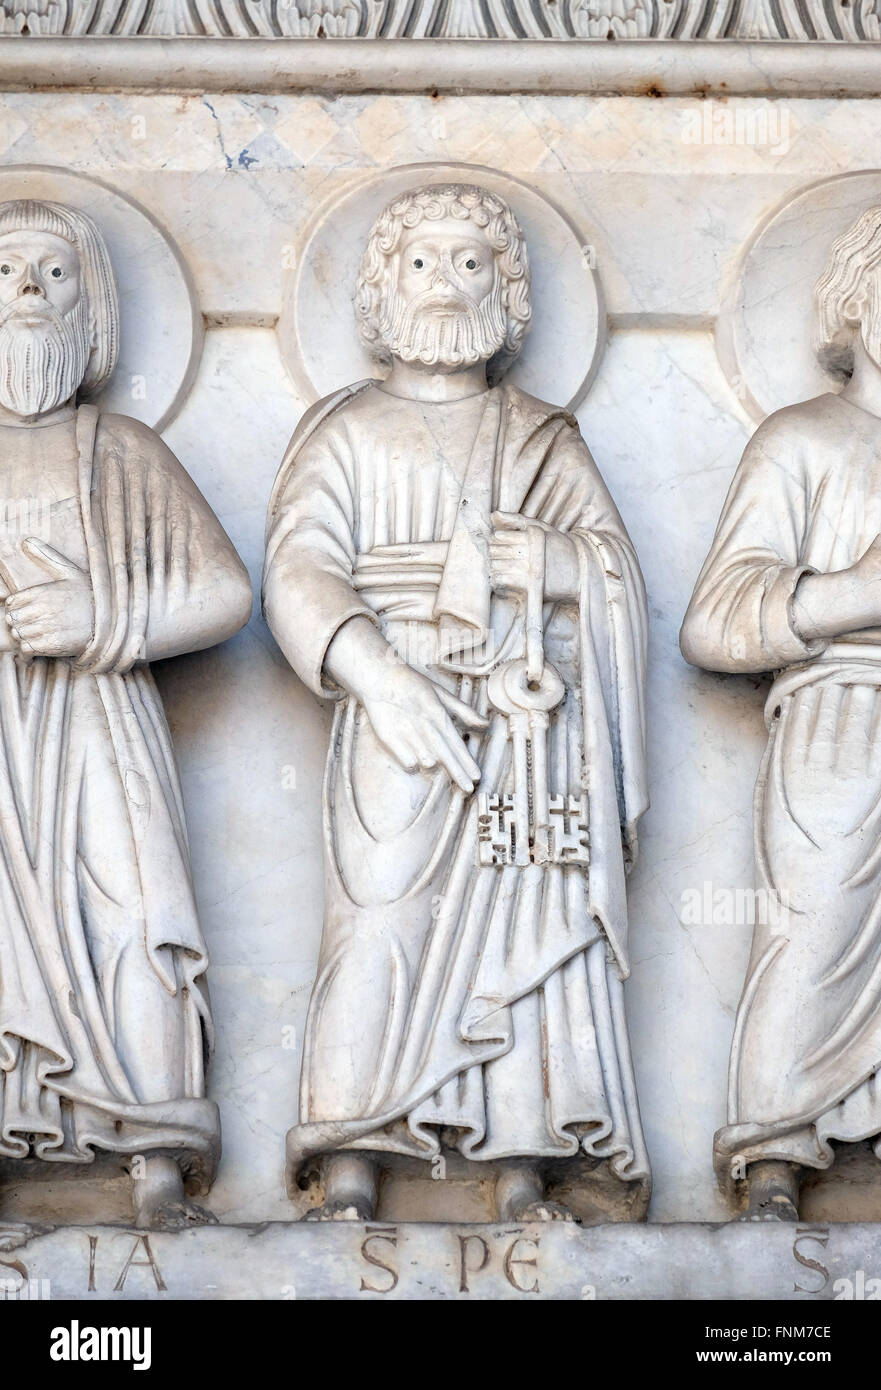 Das Basrelief aus dem Heiligen Petrus, der Apostel, Kathedrale von s. Martino in Lucca, Italien Stockfoto